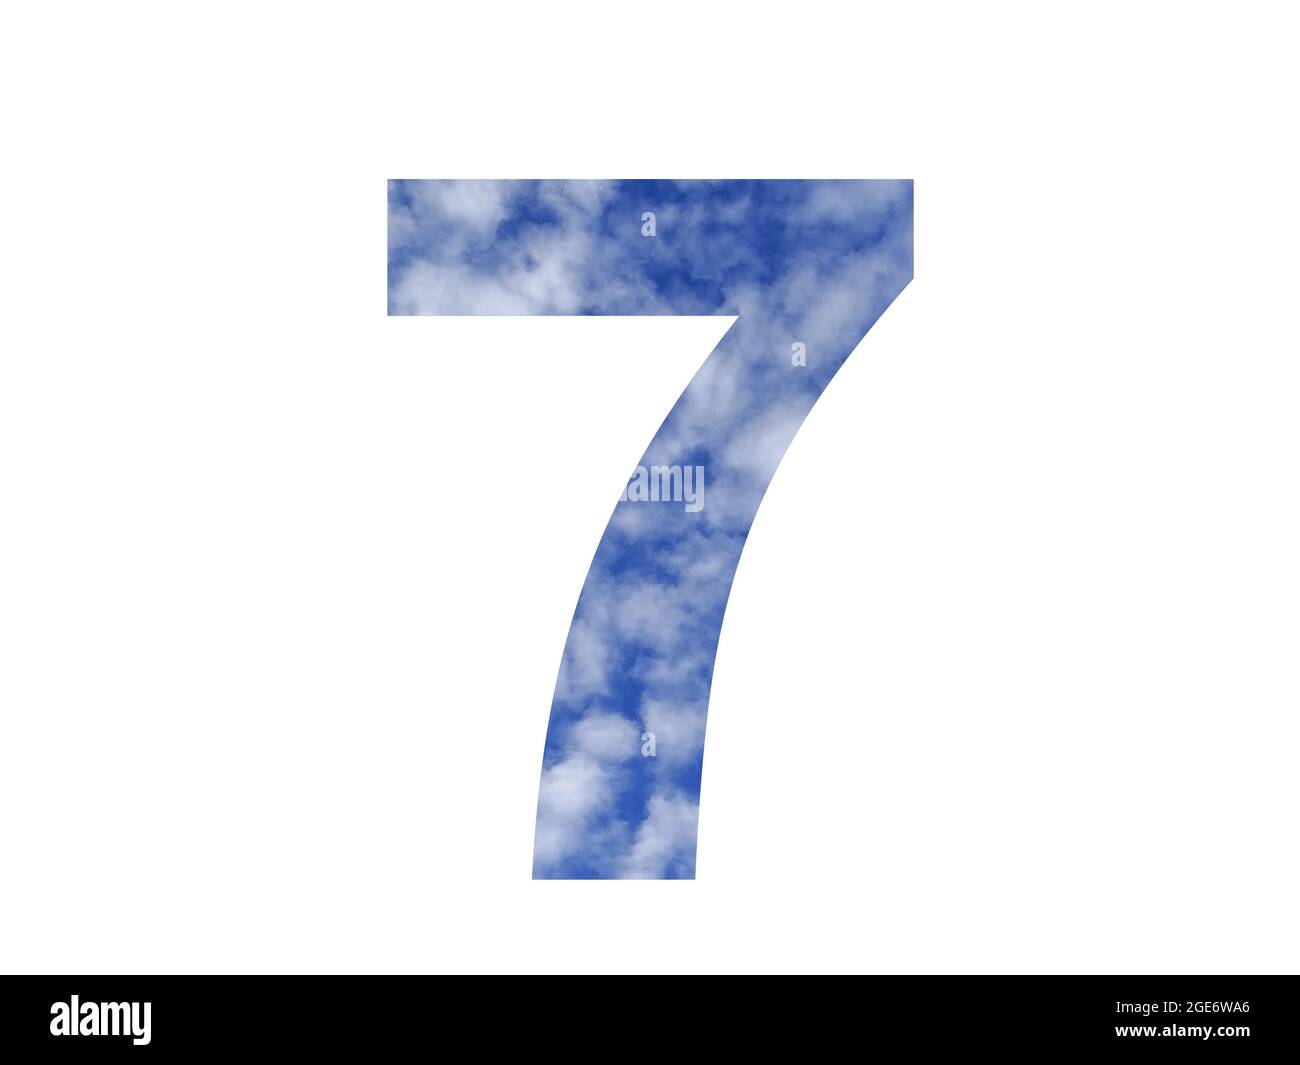 numero 7 dell'alfabeto fatto con cielo blu e nuvole bianche, isolato su sfondo bianco Foto Stock